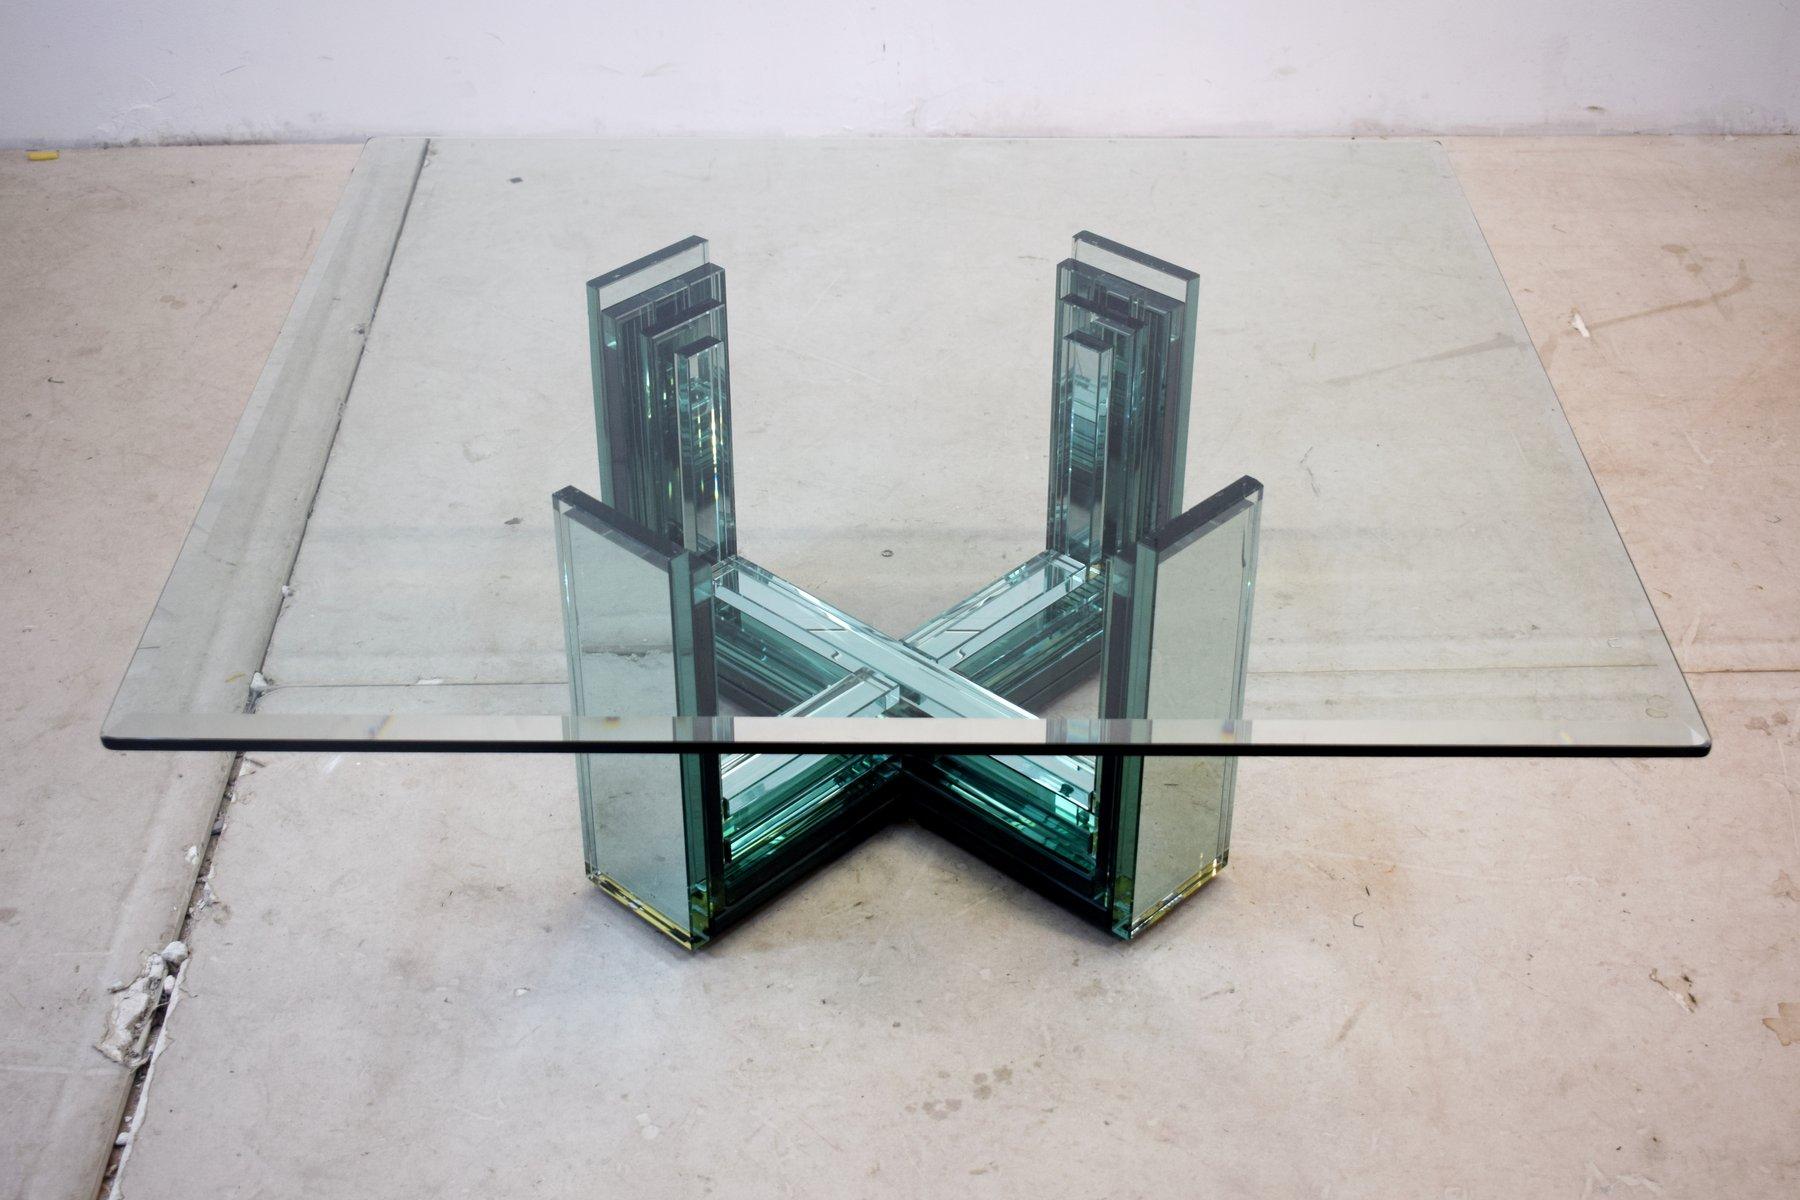 Table basse italienne en verre, années 1970.
Dimensions : H= 37 cm ; L= 100 cm ; P= 93 cm : H= 37 cm ; L= 100 cm ; P= 93 cm.